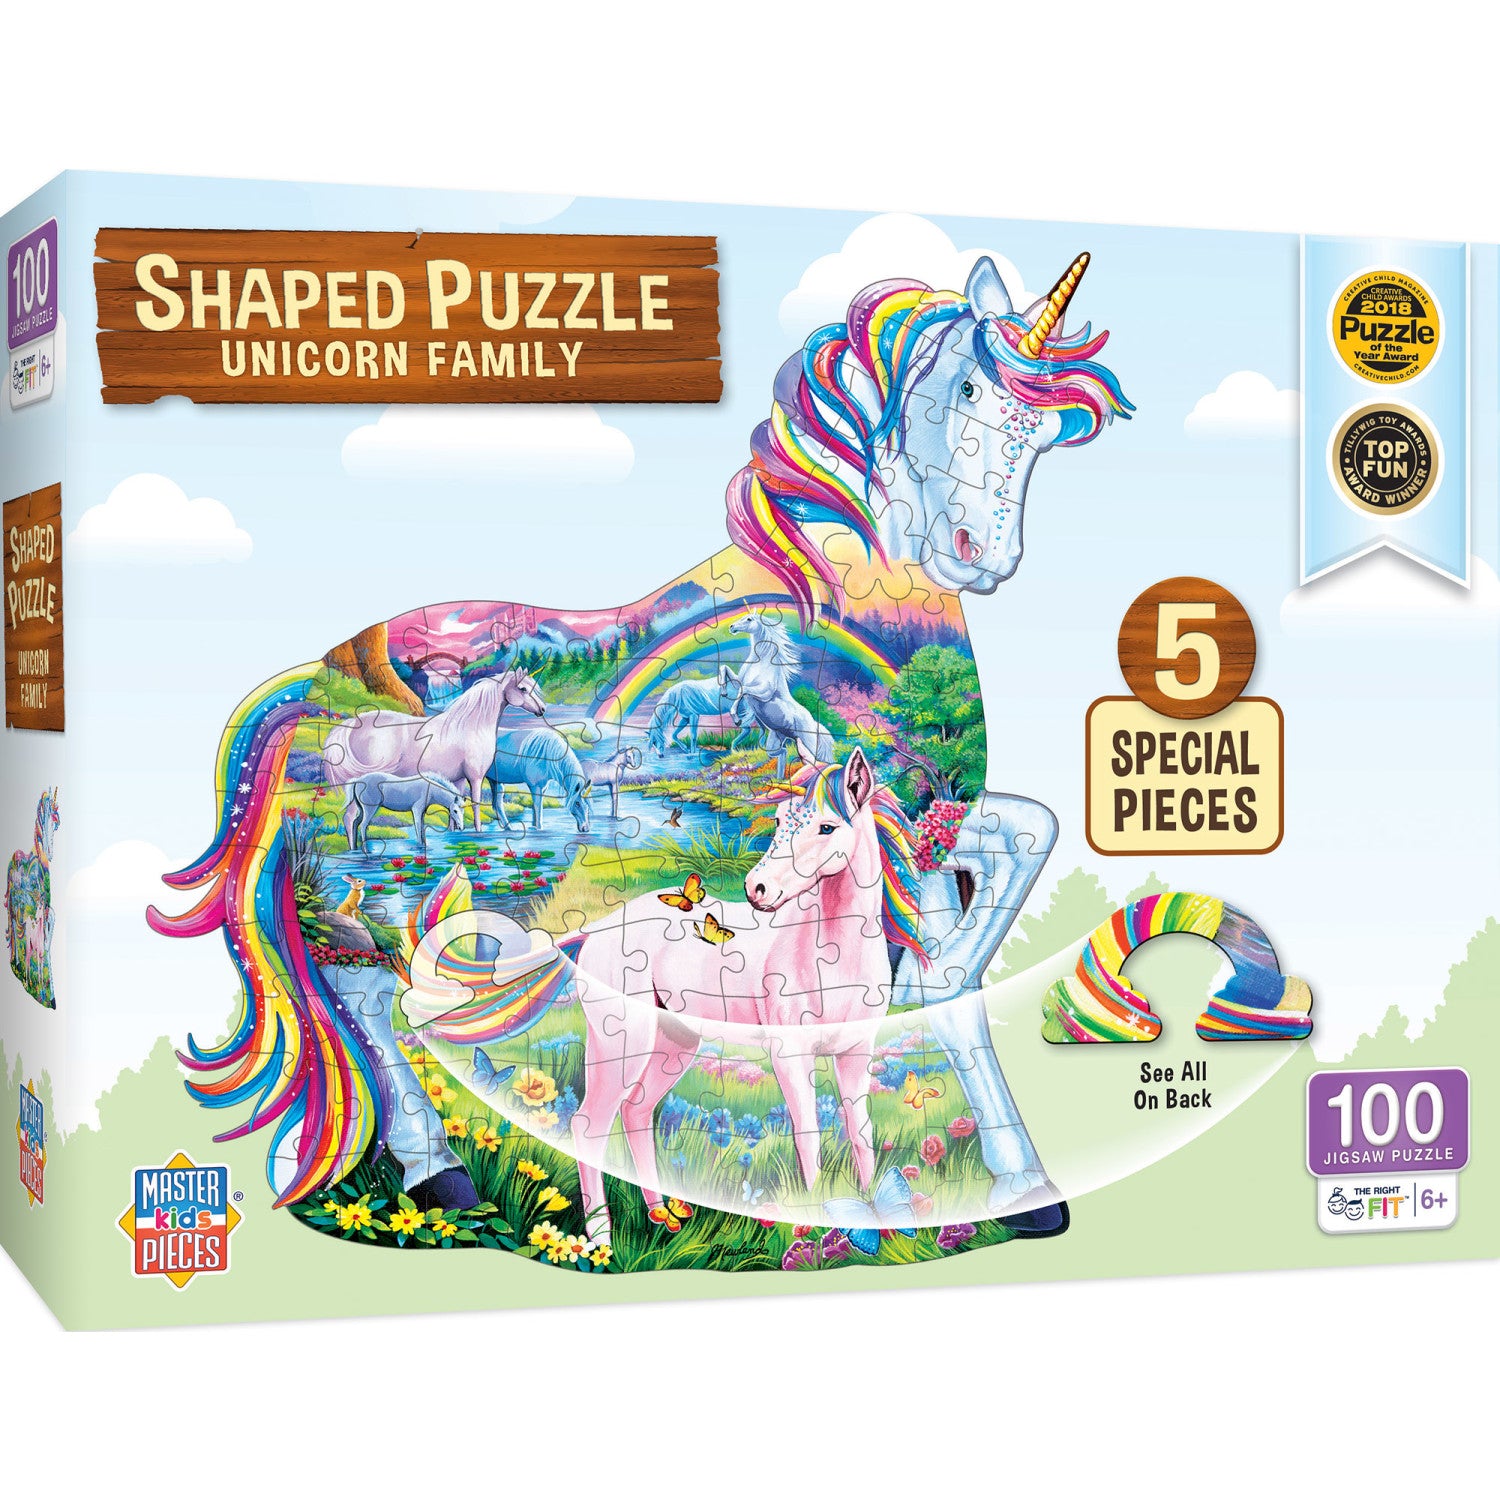 Unicorn Family - 100 Piece Shaped Puzzle